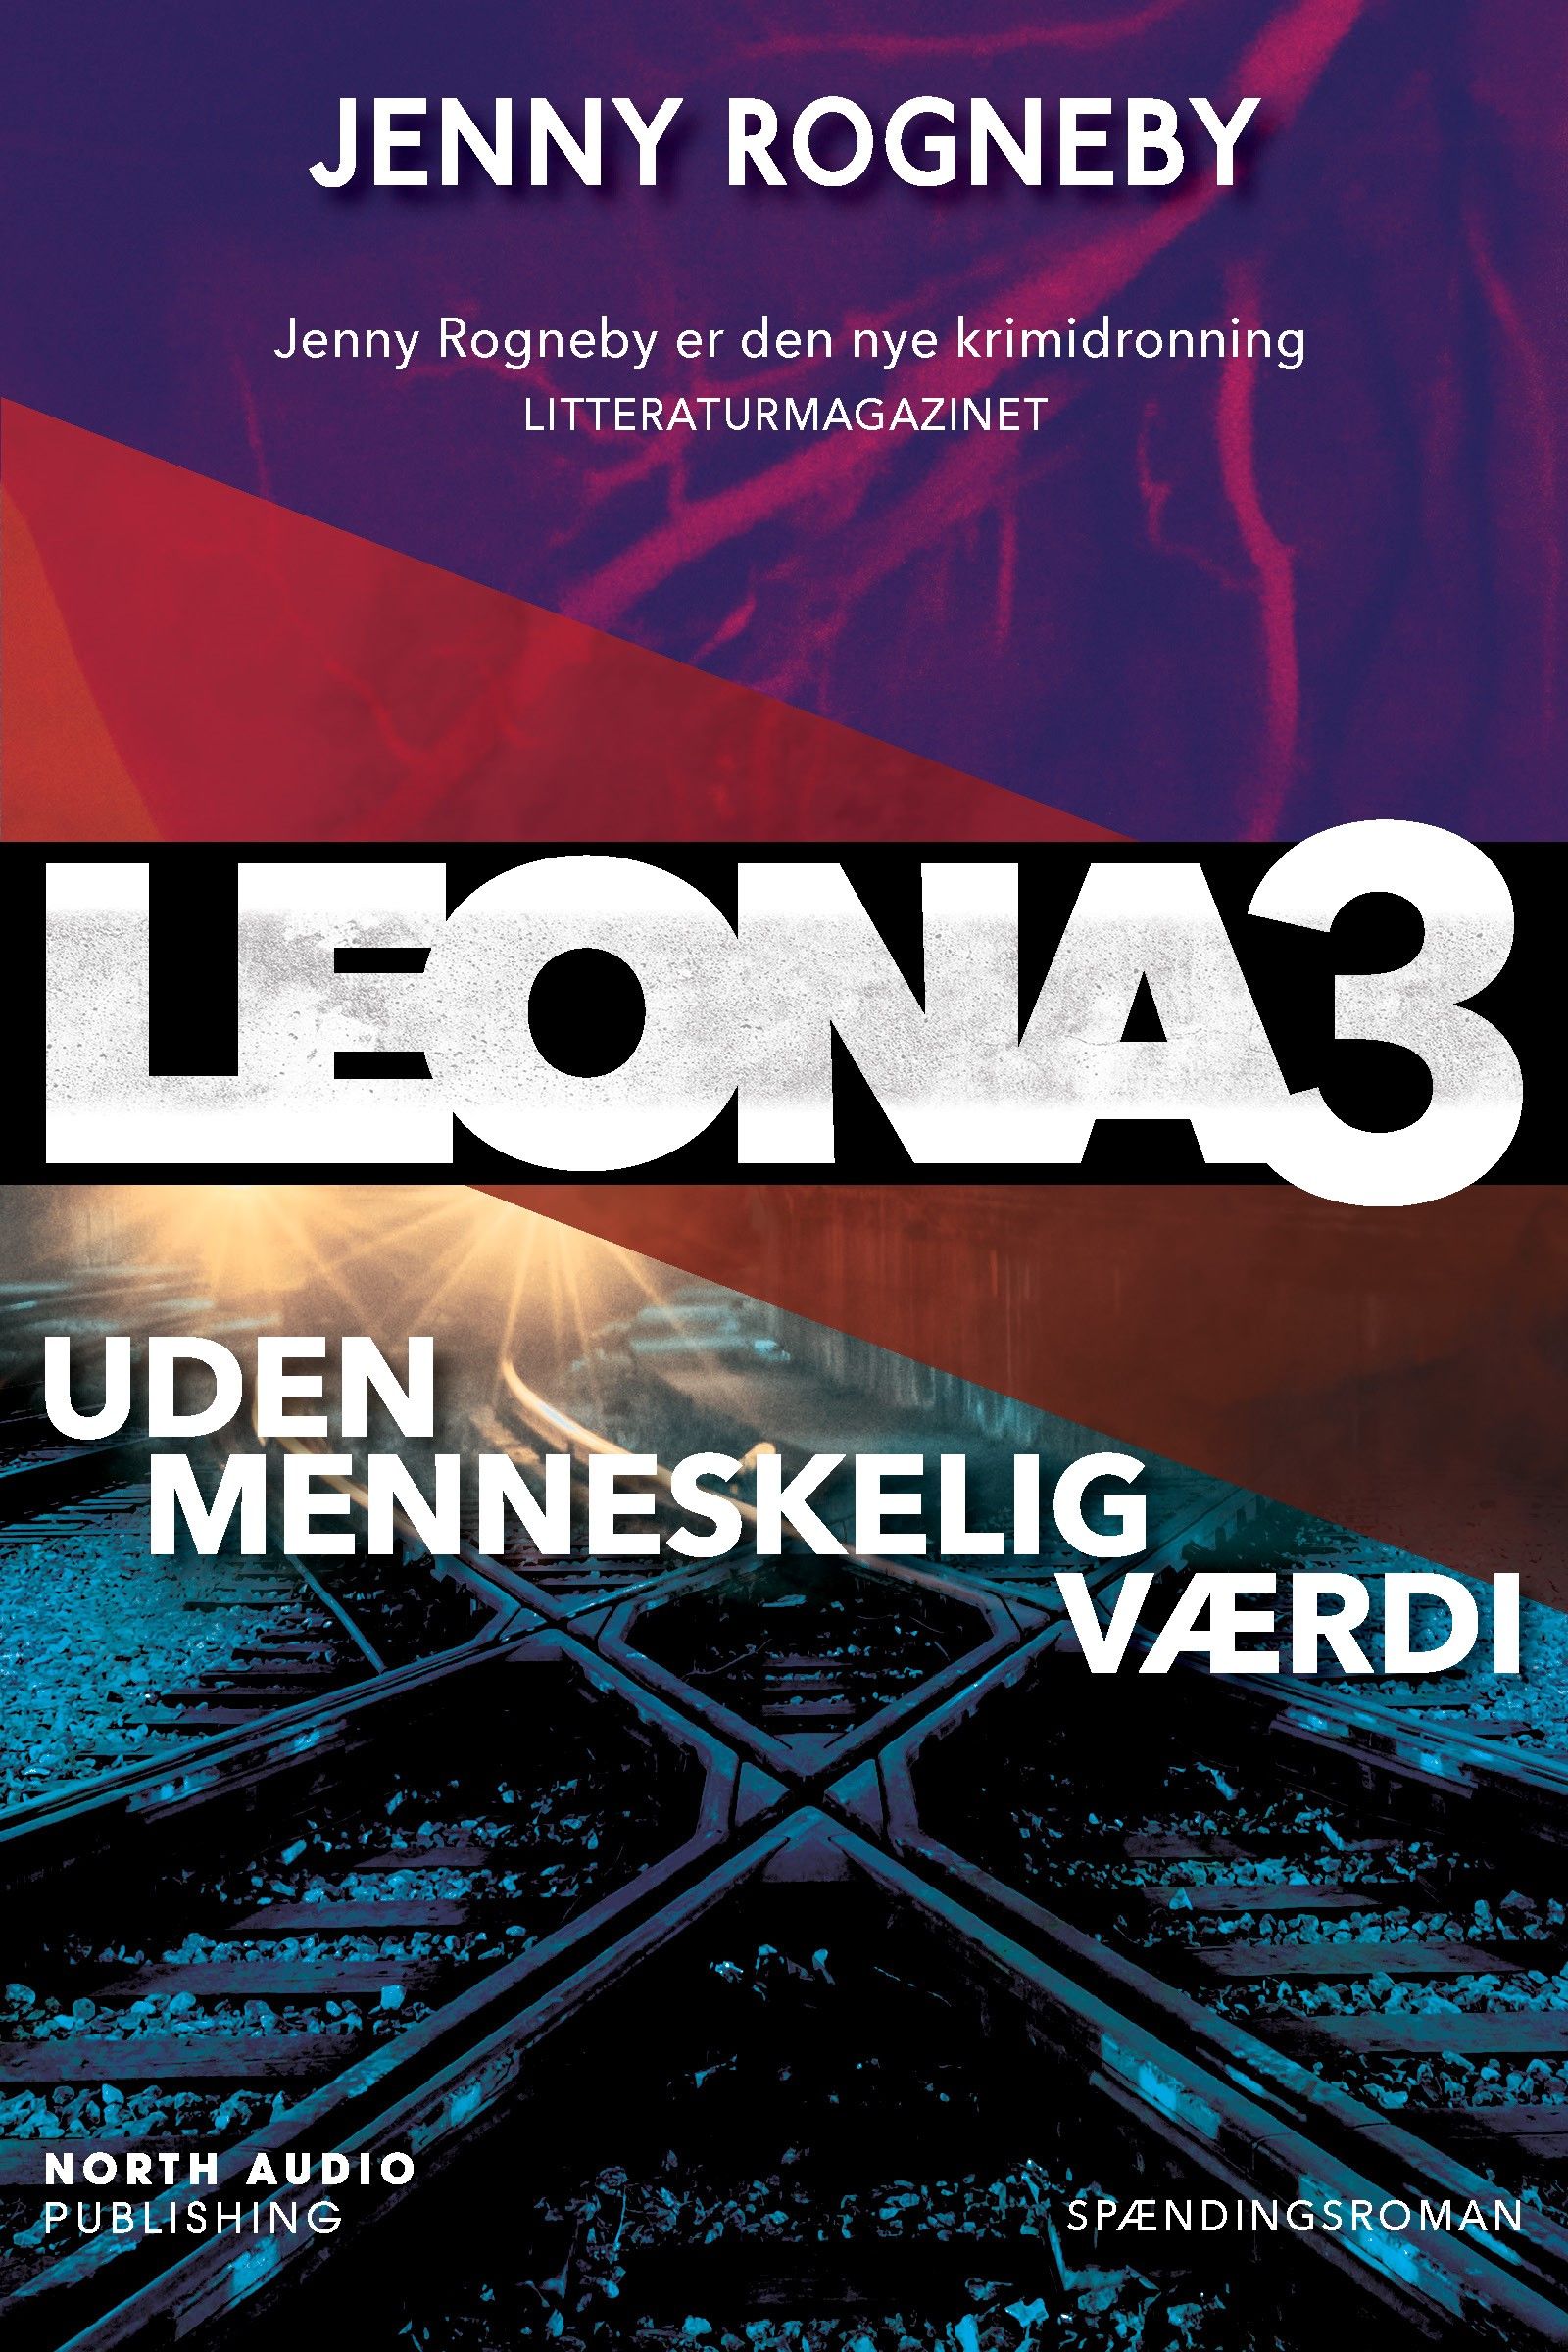 Leona - uden menneskelig værdi, e-bog af Jenny Rogneby